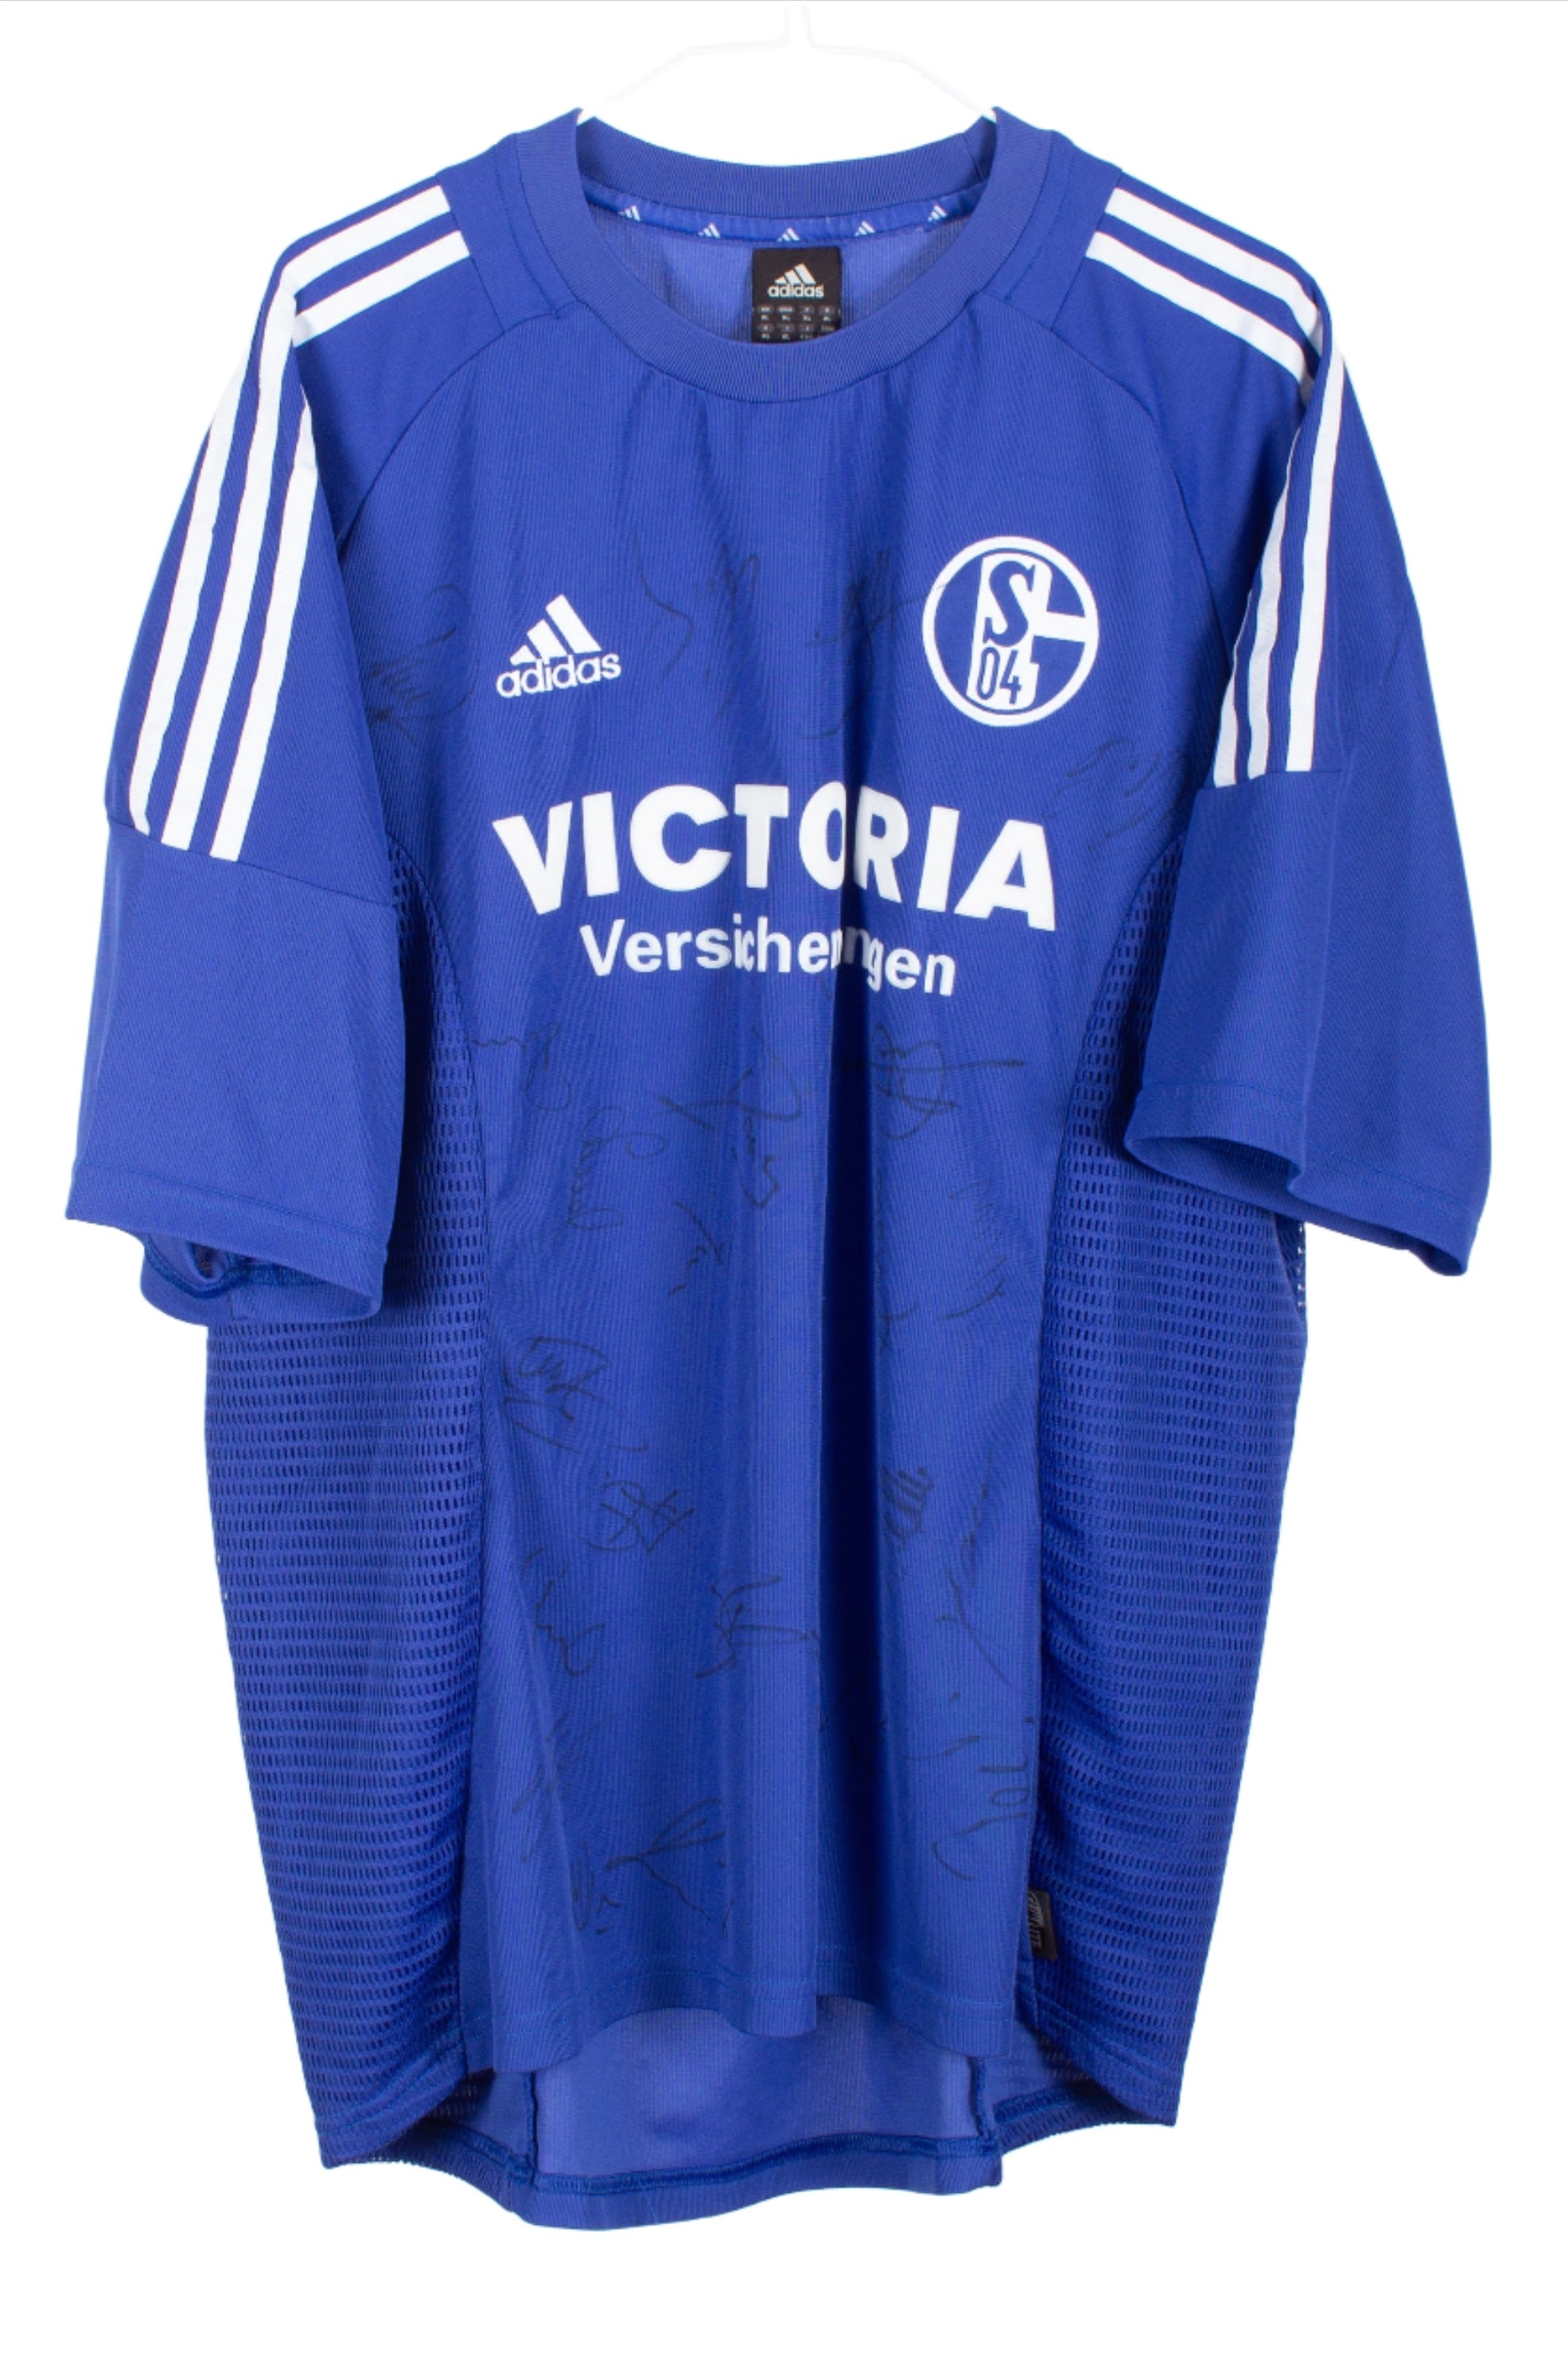 Schalke 04 2002/03 *Signed* Home Shirt (XL)